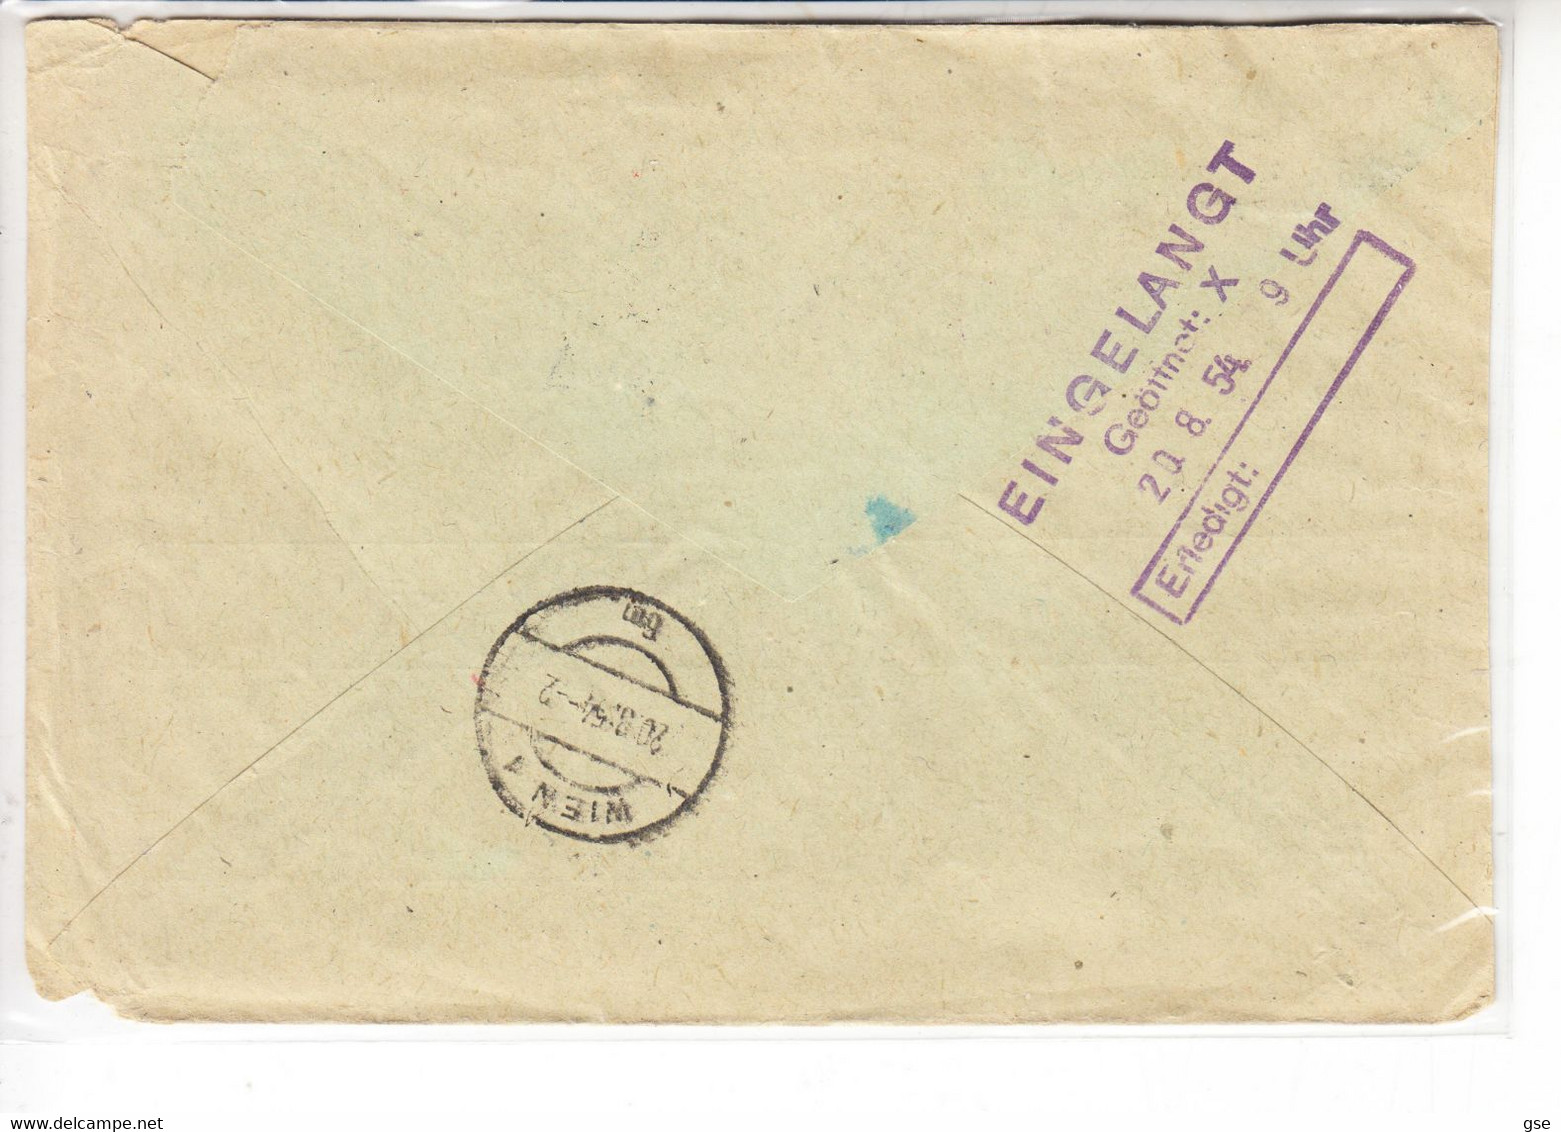 BULGARIA 1954 -  Yvert 738-771 Su Raccomandata Per  Wien - Storia Postale